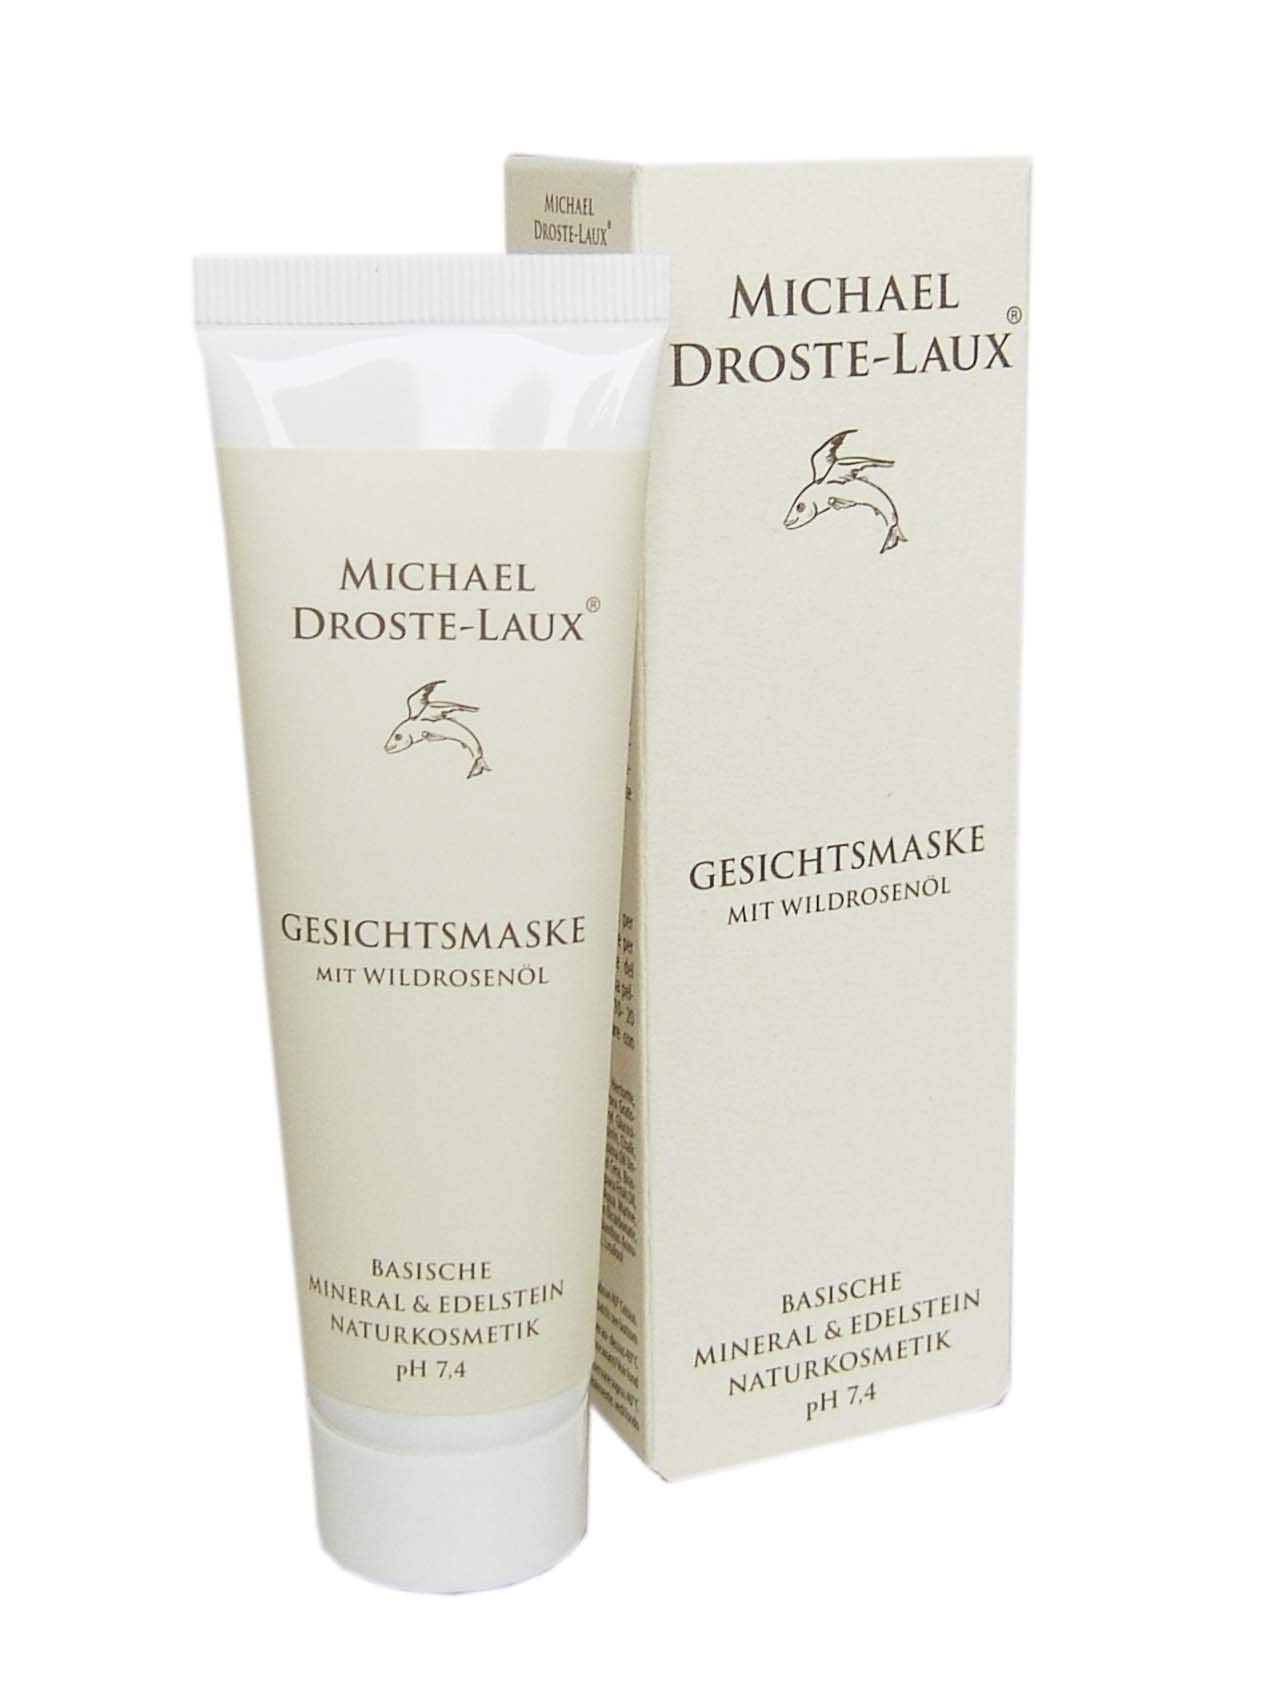 Michael Droste-Laux Naturkosmetik basische Gesichtsmaske, 50 ml